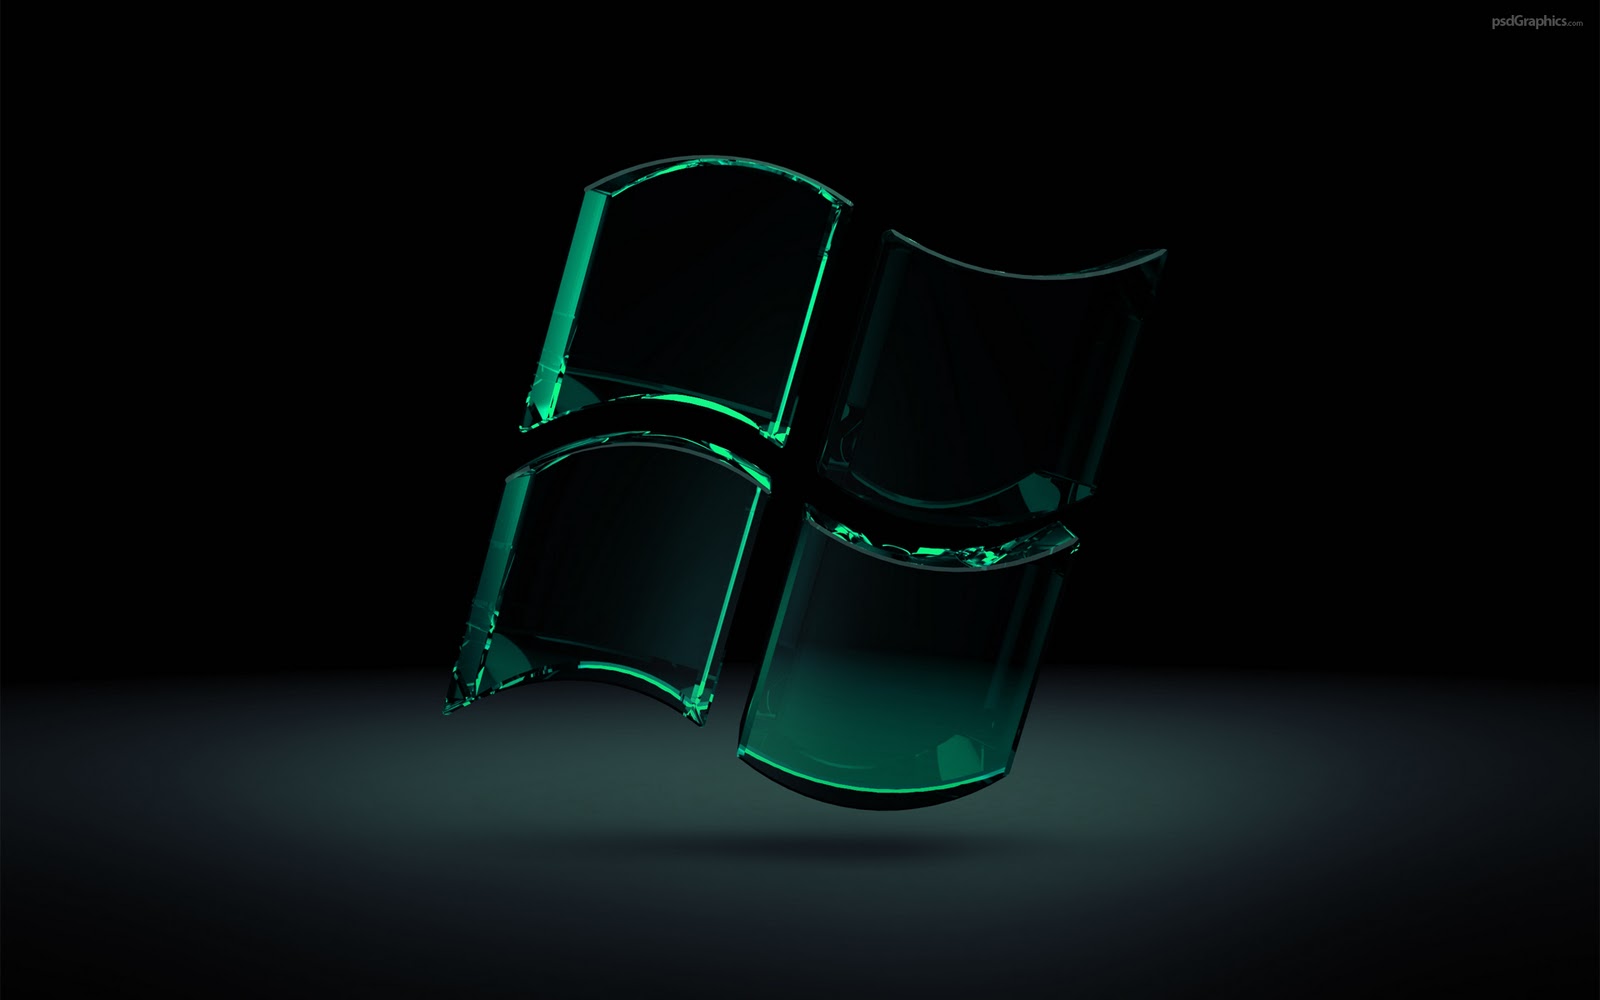 sfondi,verde,leggero,sedia,materiale trasparente,fotografia di still life